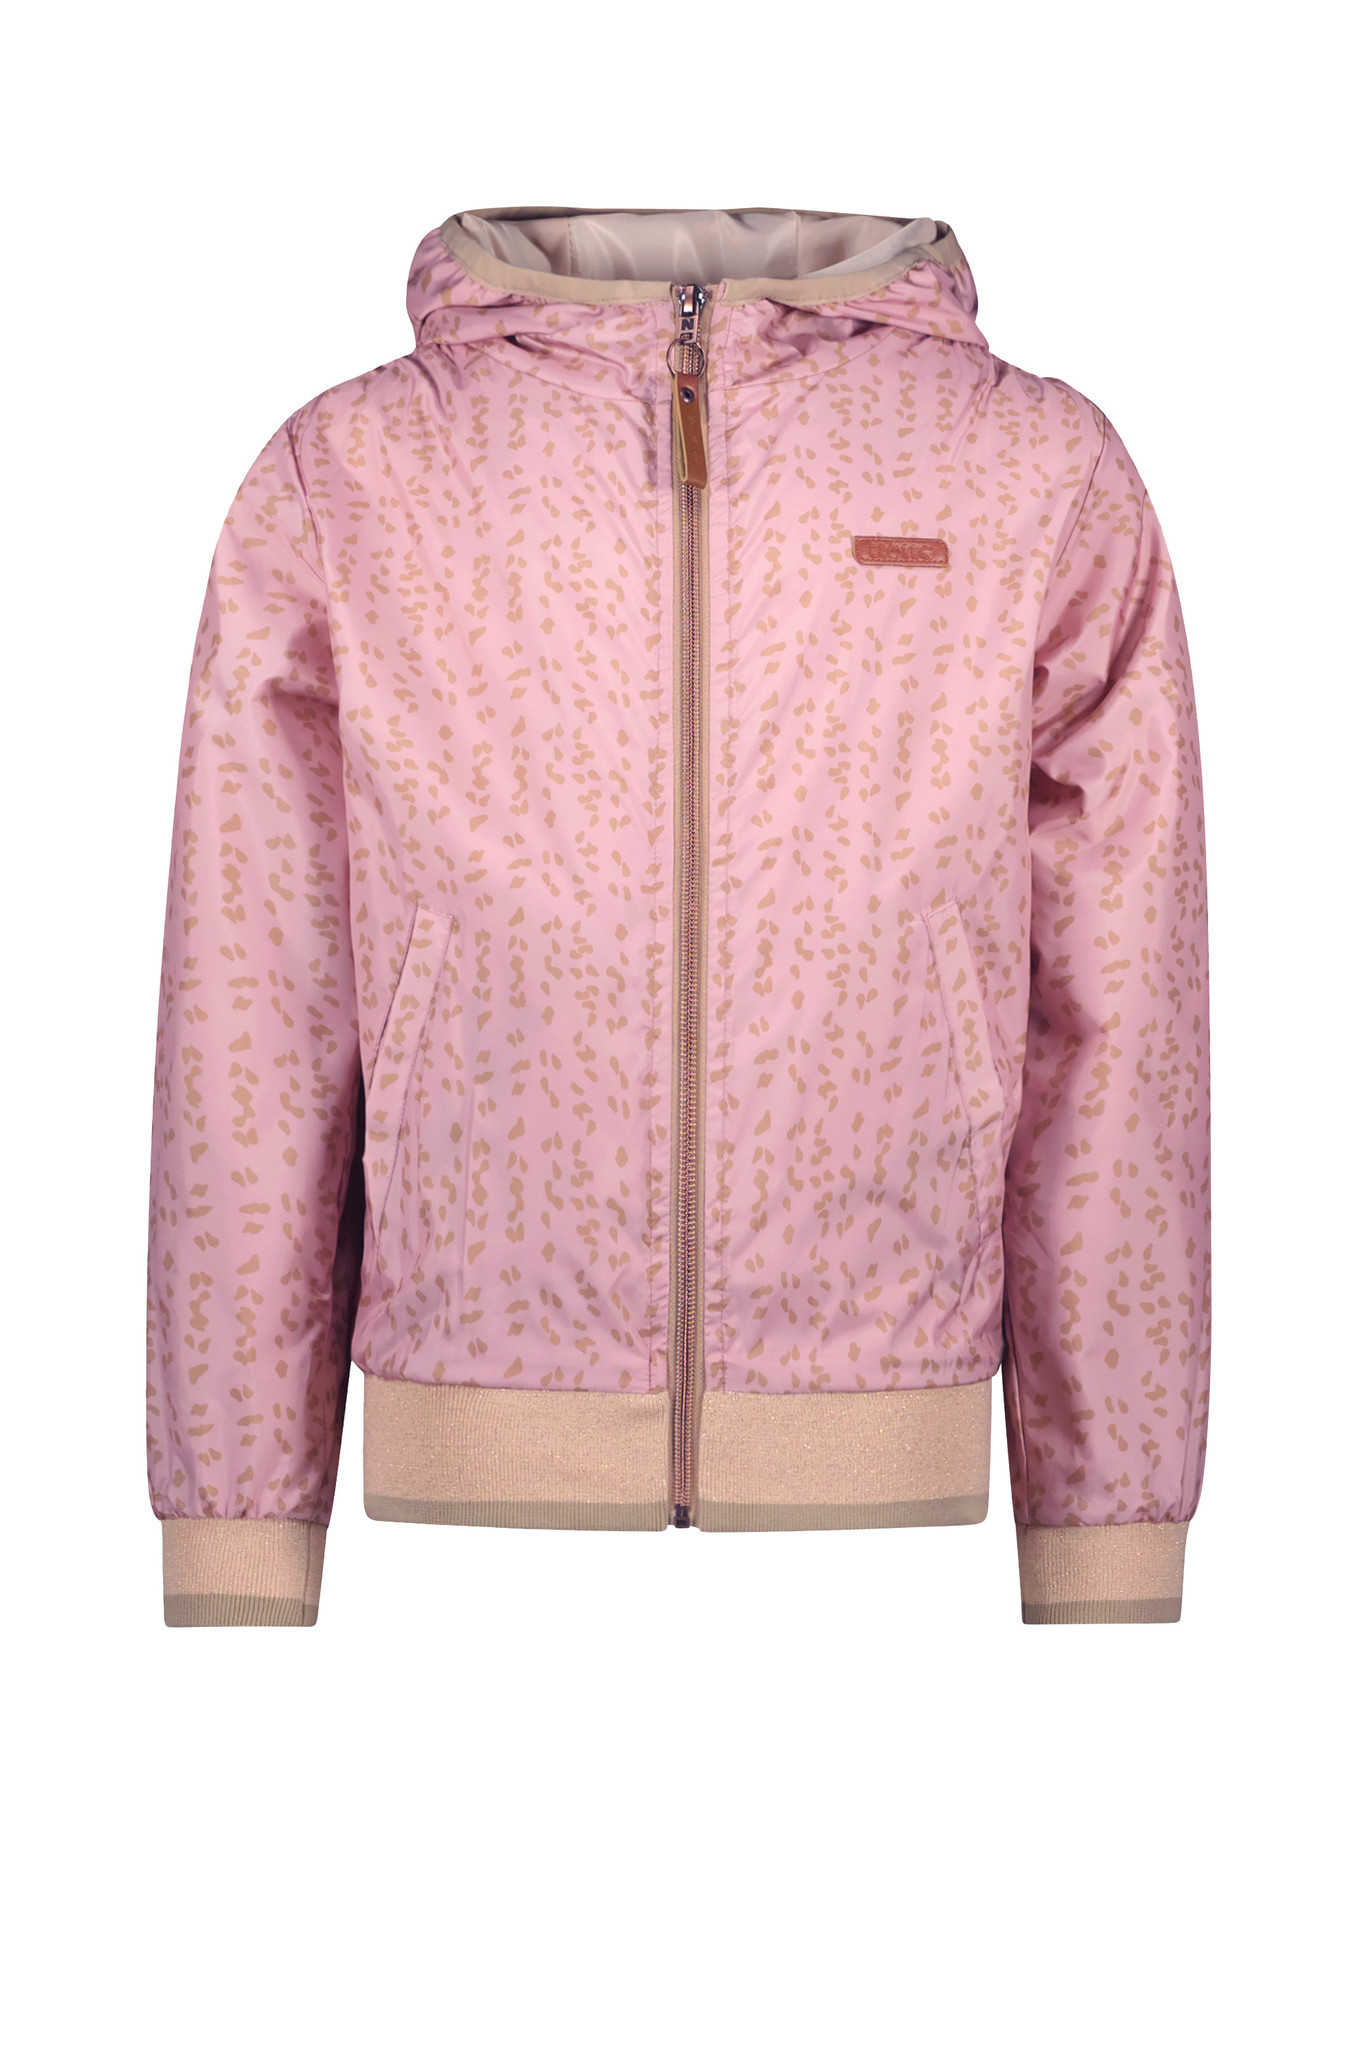 NoNo - Meisjes capuchon - - Vintage roze - merkmeisjeskleding.nl